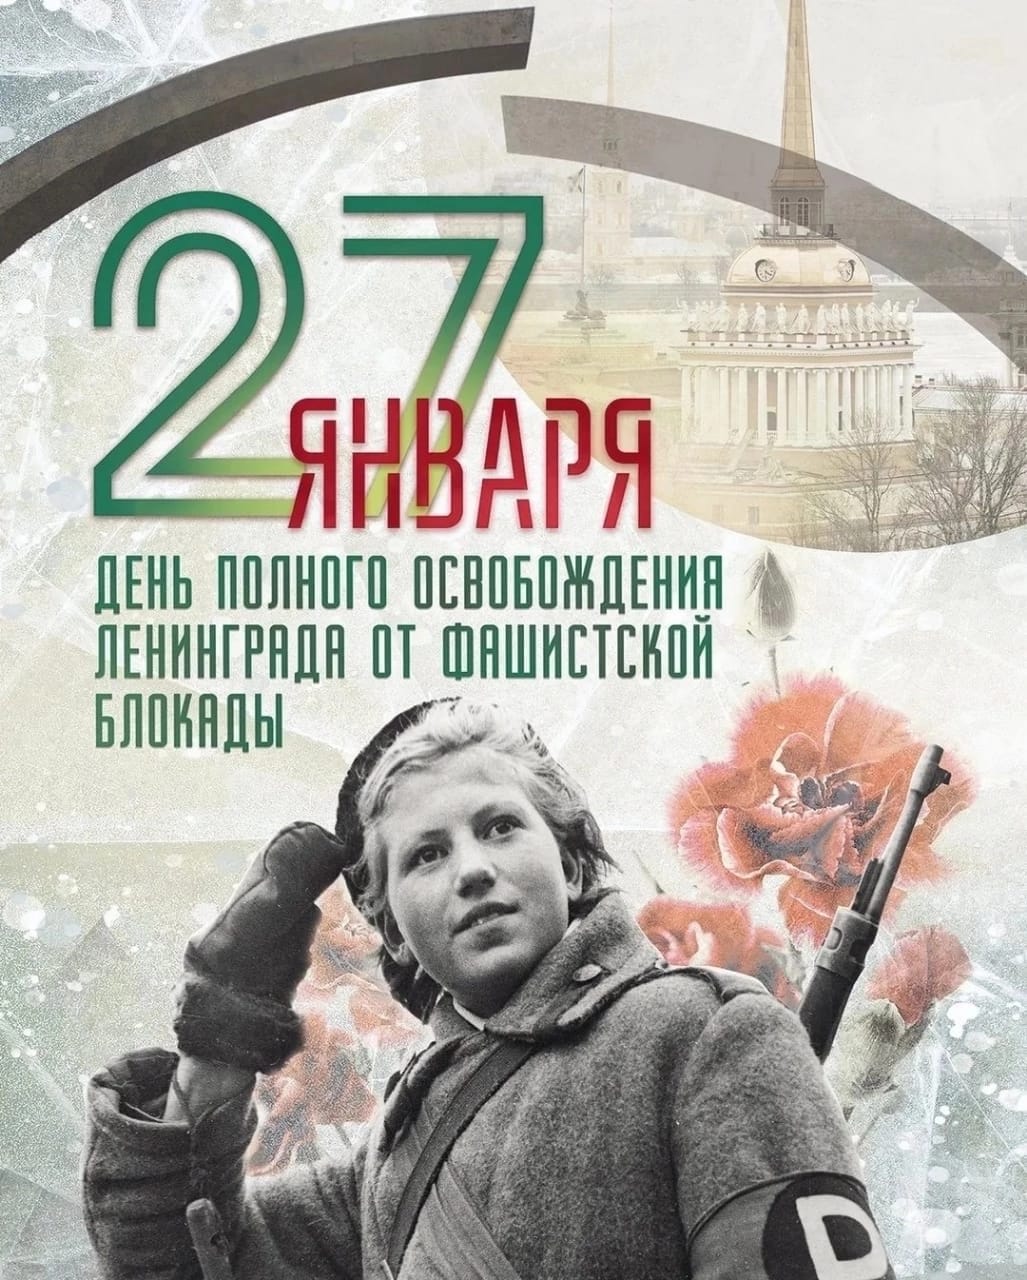 27 января 1944 года произошло полное освобождение Ленинграда от фашистской блокады..